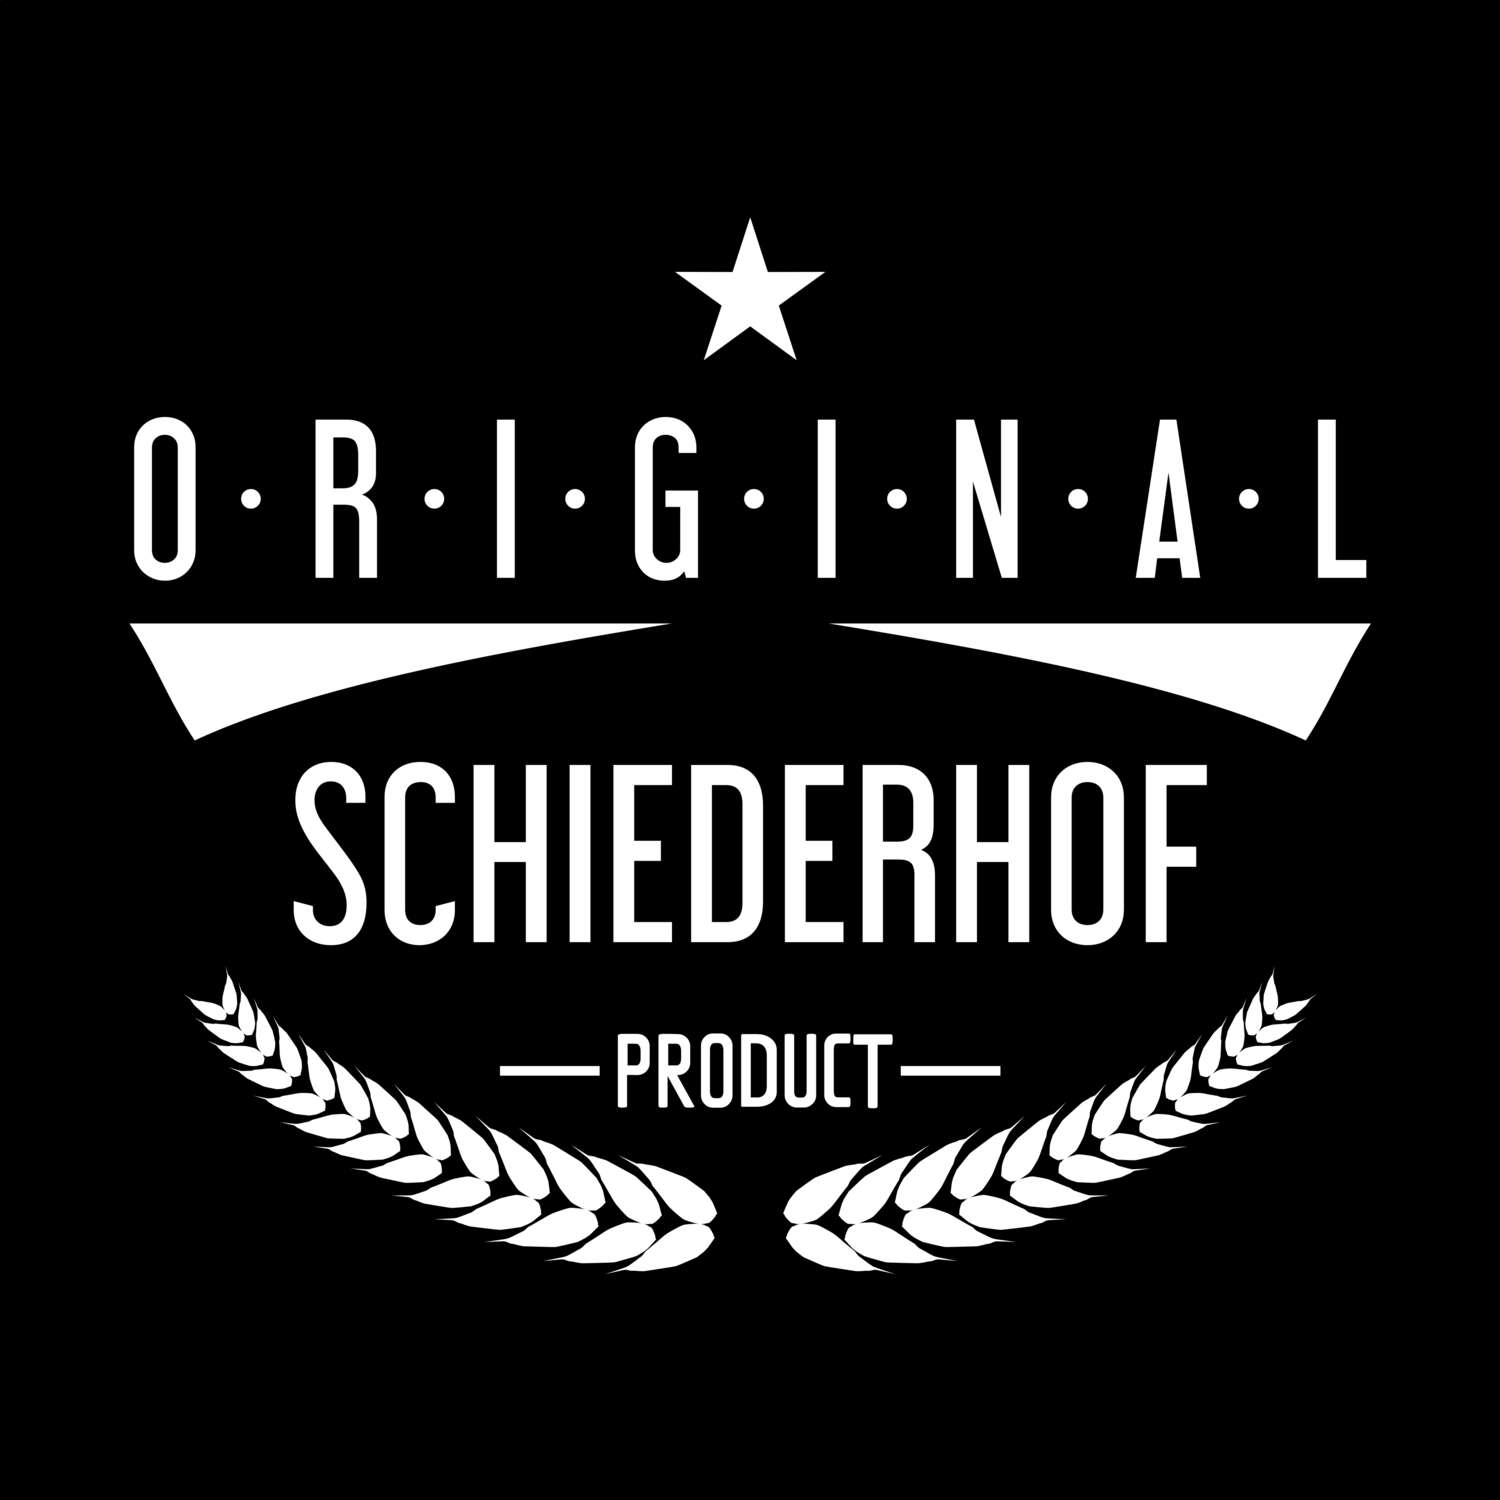 Schiederhof T-Shirt »Original Product«